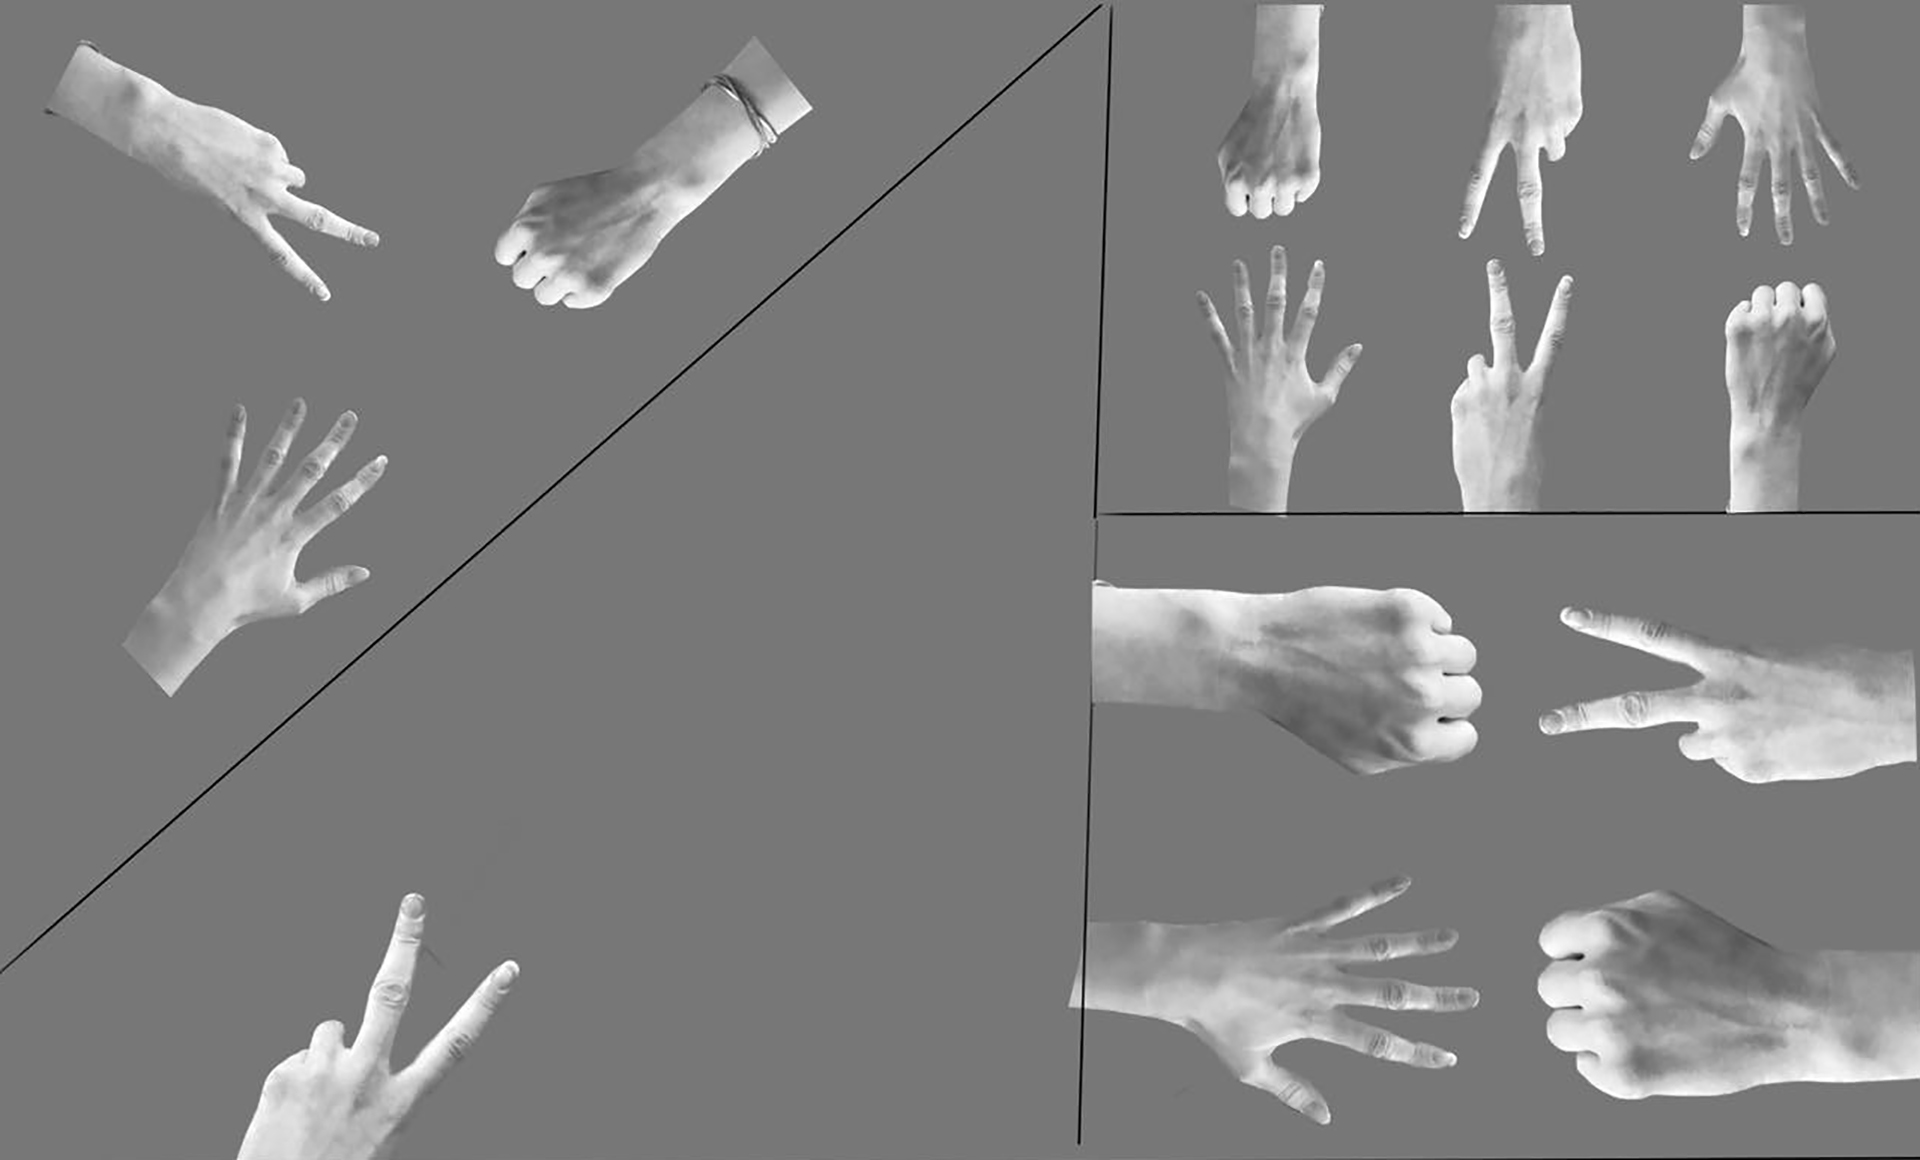 Rysunek cyfrowy o szarym tle, podzielony na dwie nierówne części. Po lewej podzielona na dwa trójkąty, z których górny- mniejszy znajdują się trzy wycięte zdjęcia dłoni. W dolnym-mniejszym tylko tylko jedna dłoń. Część po prawej jest dodatkowo podzielona na dwa prostokąty. W każdym tym polu dłonie w różnych układach skierowane są do siebie, symulując grę „papier-kamień-nożyce”.